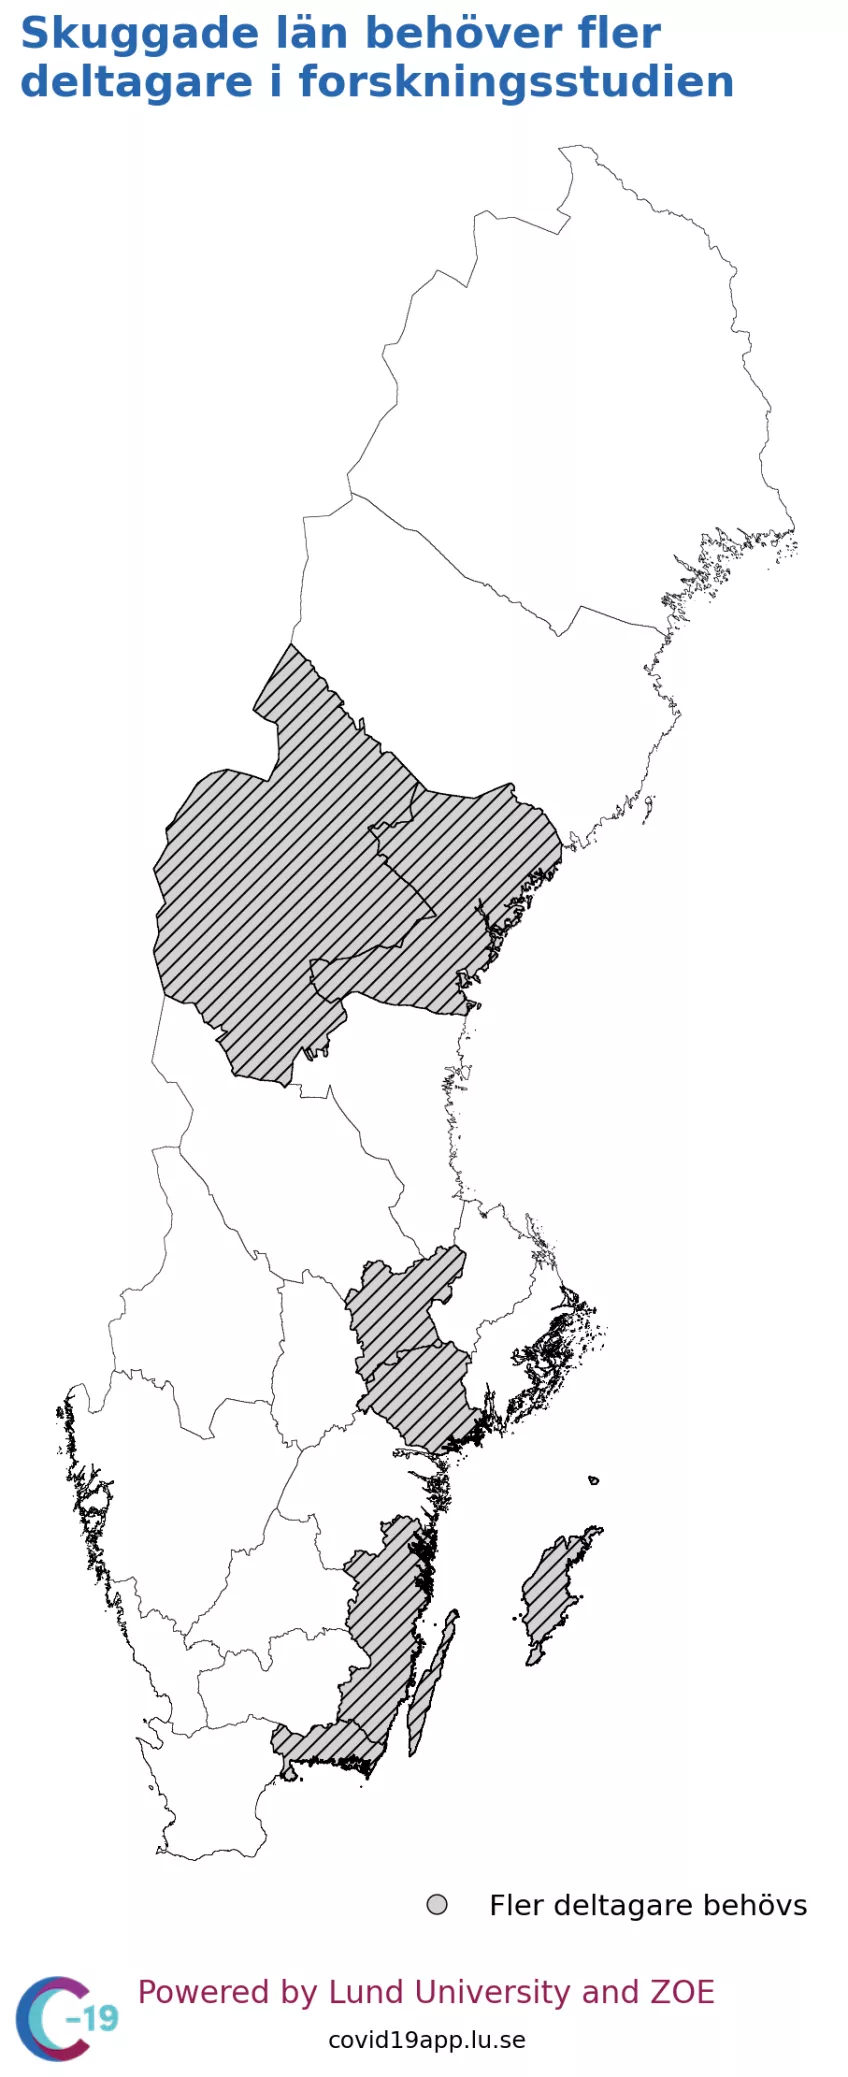 Karta över Sverige med sju markerade region där deltagarantalet är lågt.